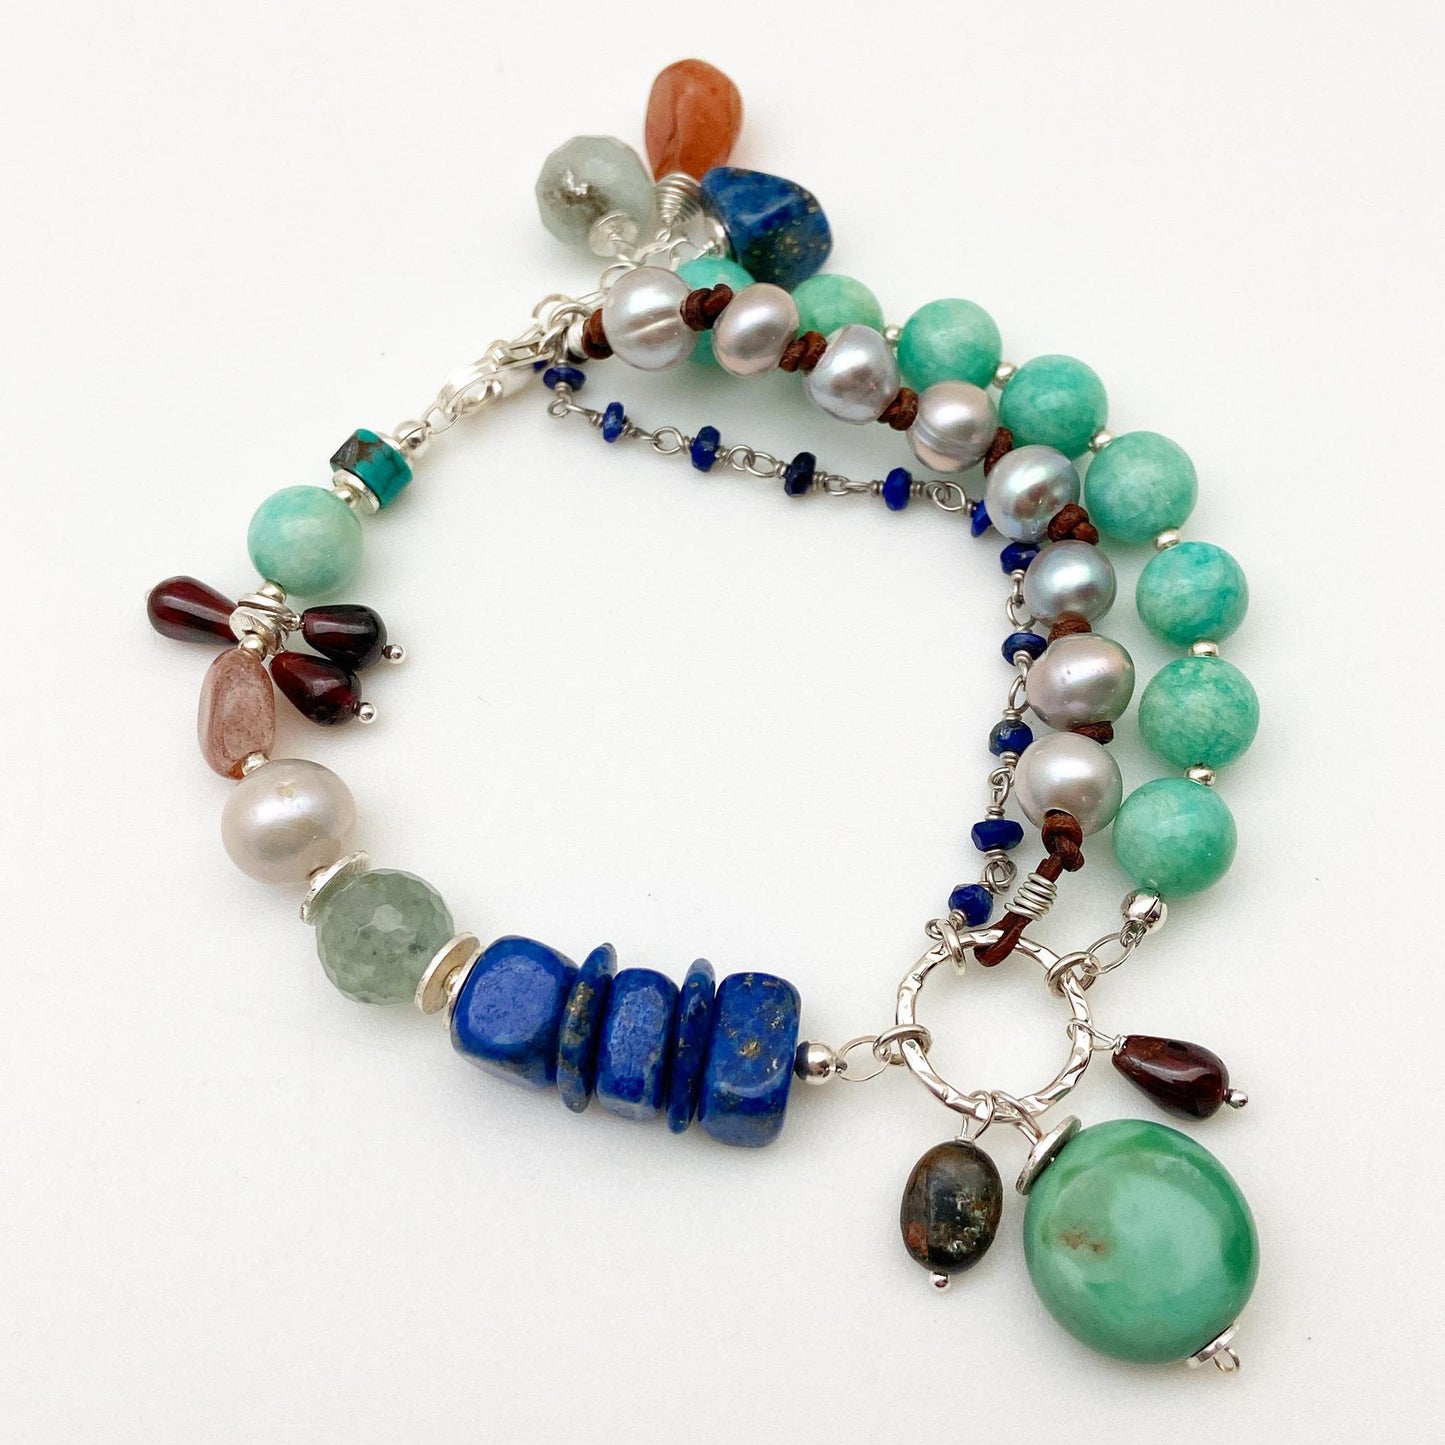 Bracelet - "Grounded" - Turquoise, Amazonite, and Lapis Lazuli